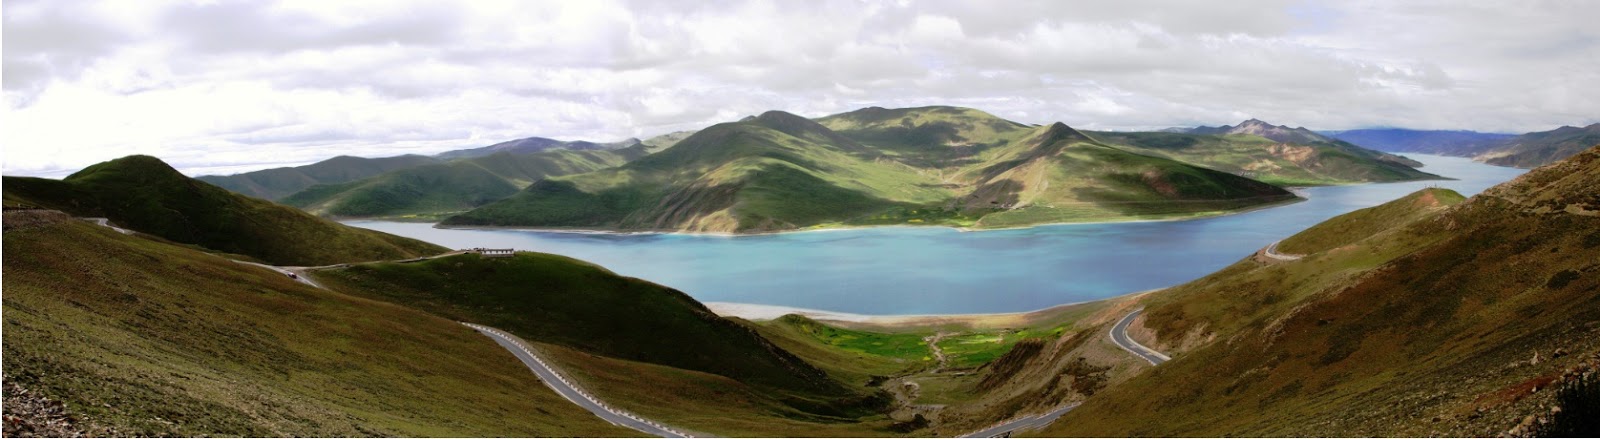 山南景點-西藏聖湖羊卓雍措